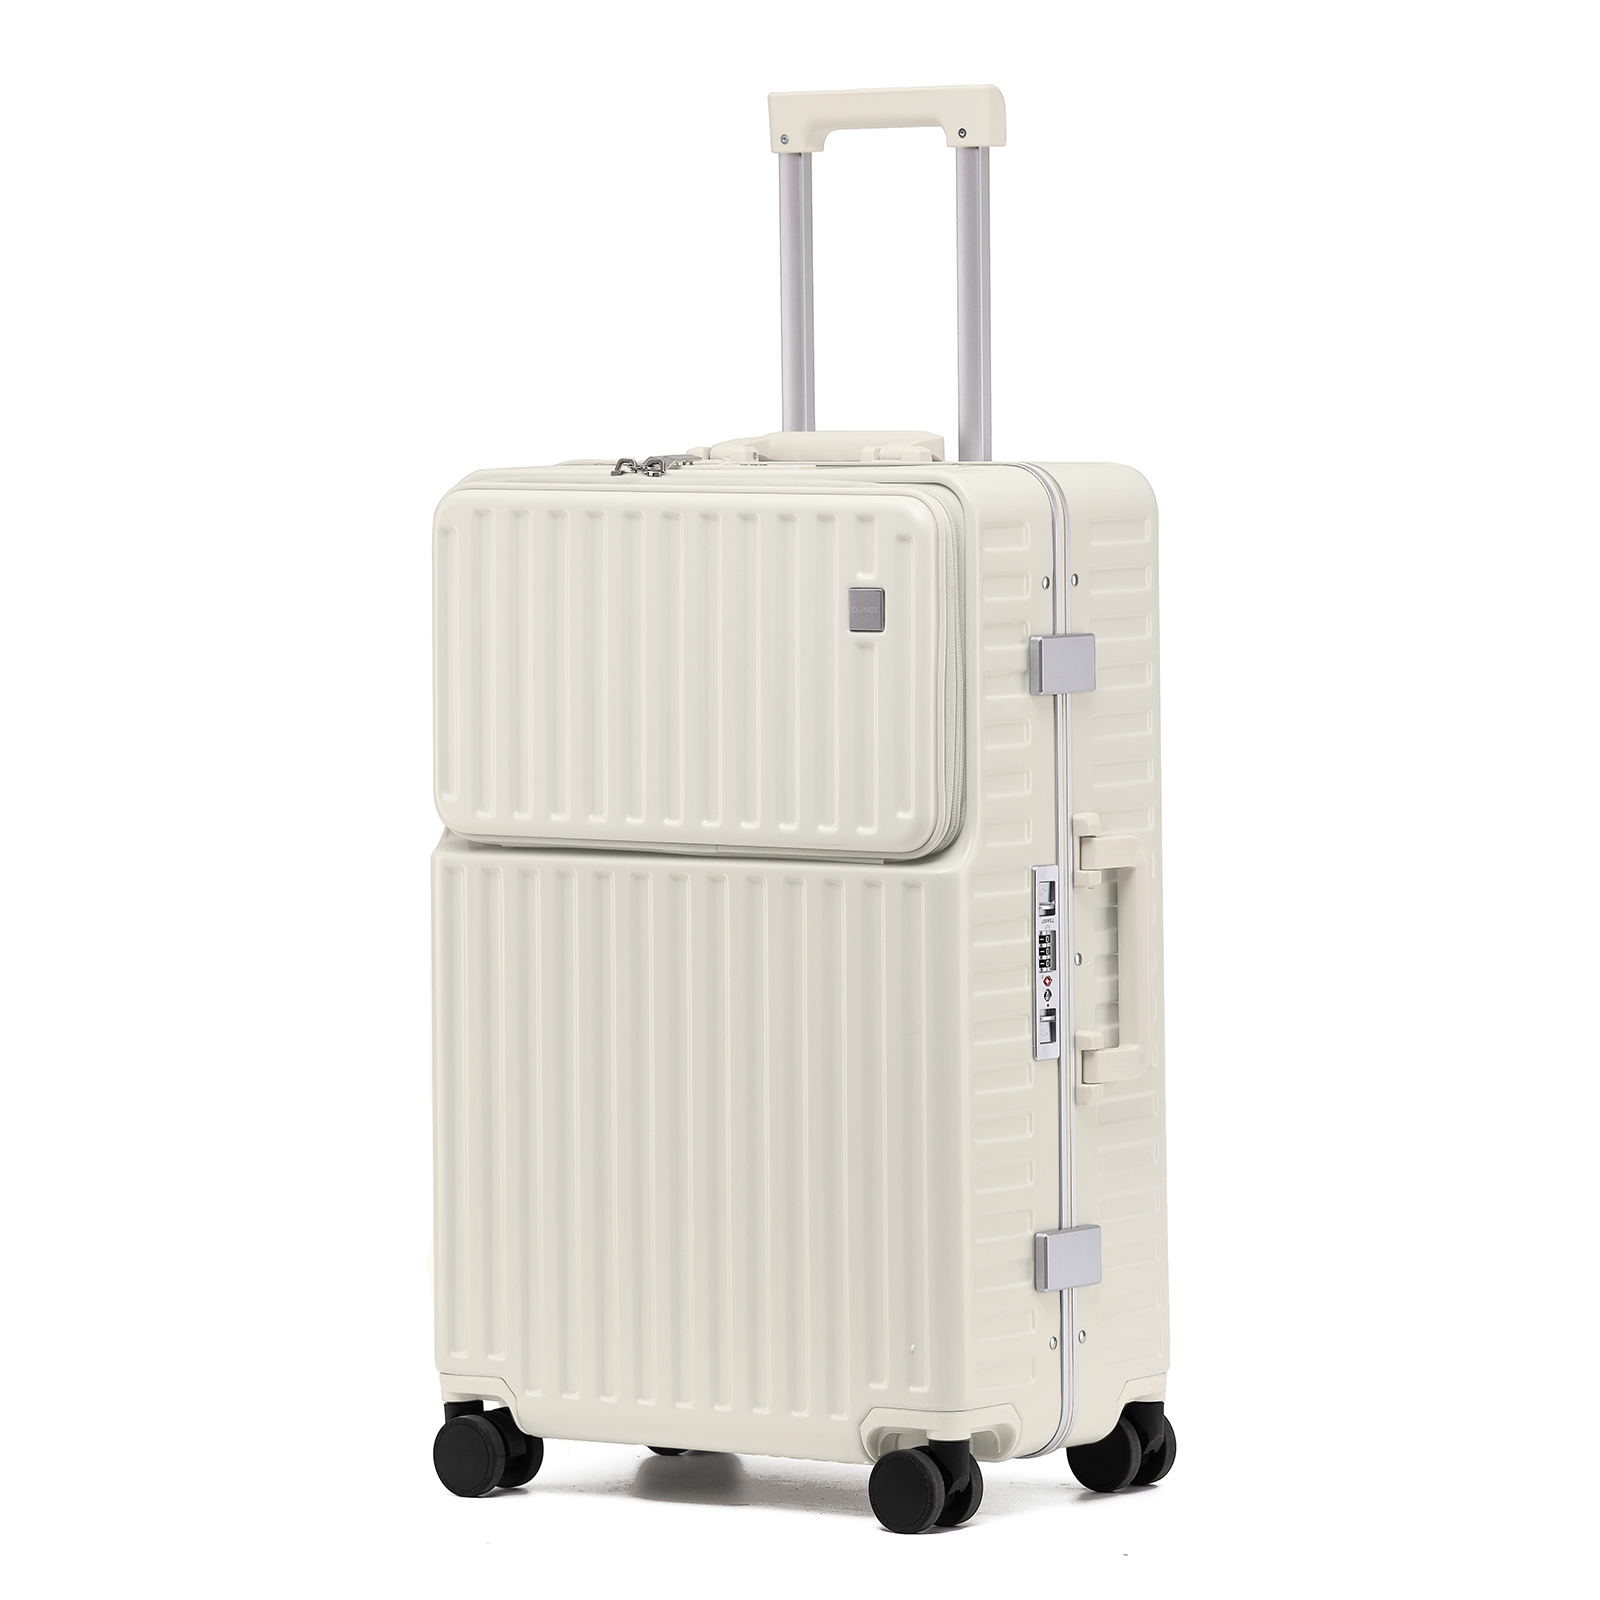 スーツケース 多機能 キャリーケース STYLISHJAPAN 公式 機内持ち込み アルミフレーム カップホルダー フロントポケット Mサイズ  .OUNCE mfsc2067-m